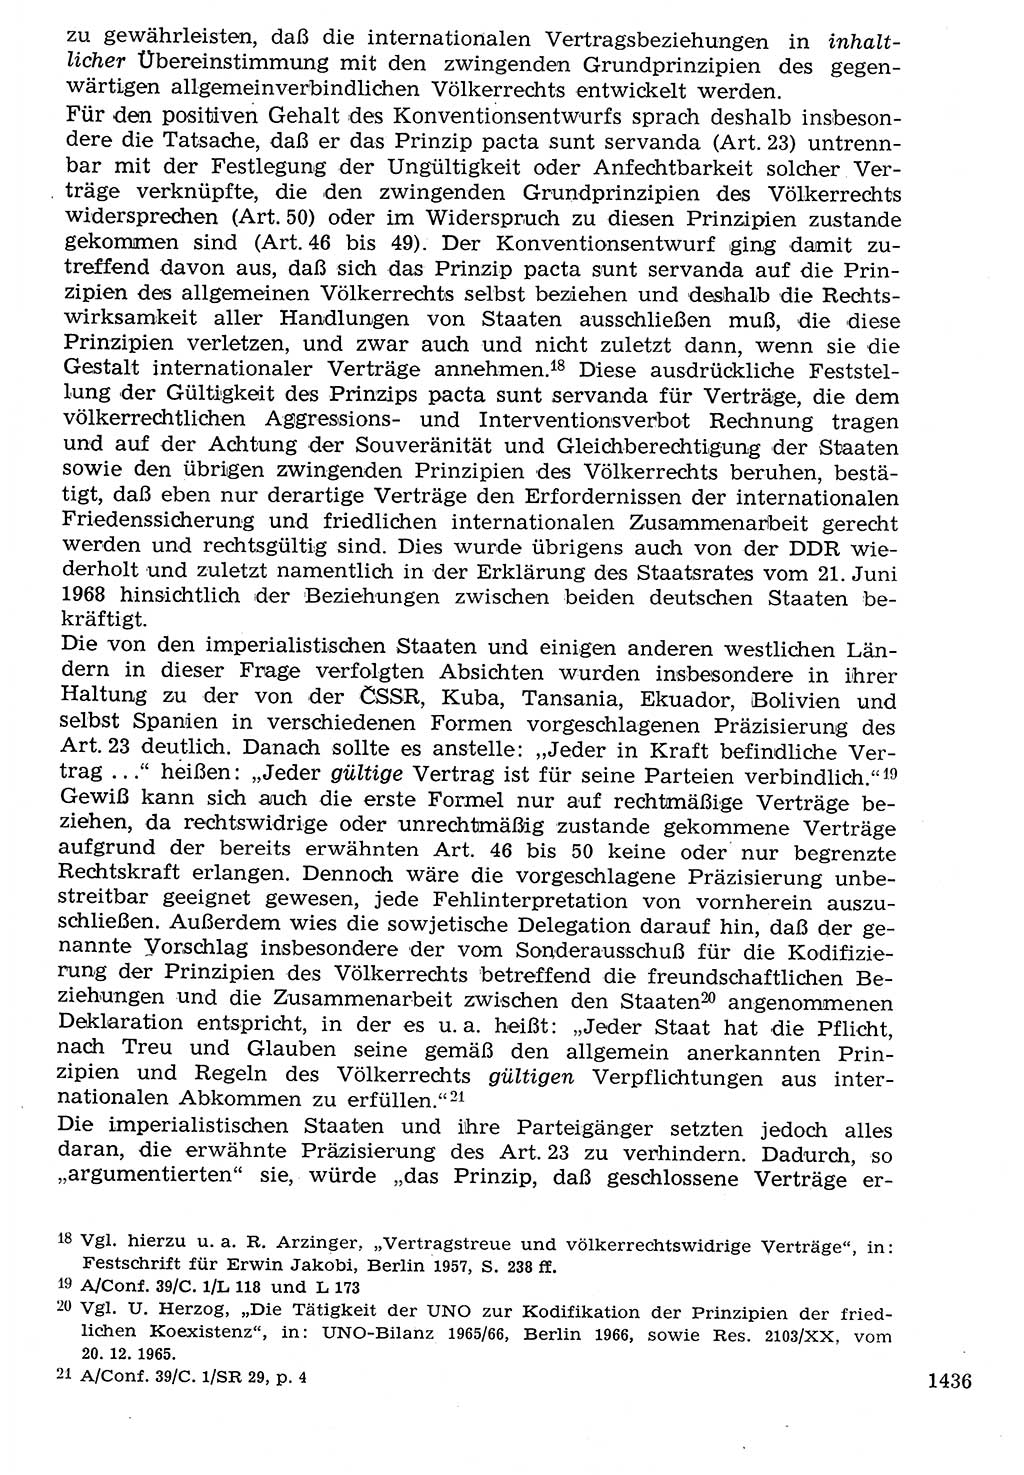 Staat und Recht (StuR), 17. Jahrgang [Deutsche Demokratische Republik (DDR)] 1968, Seite 1436 (StuR DDR 1968, S. 1436)